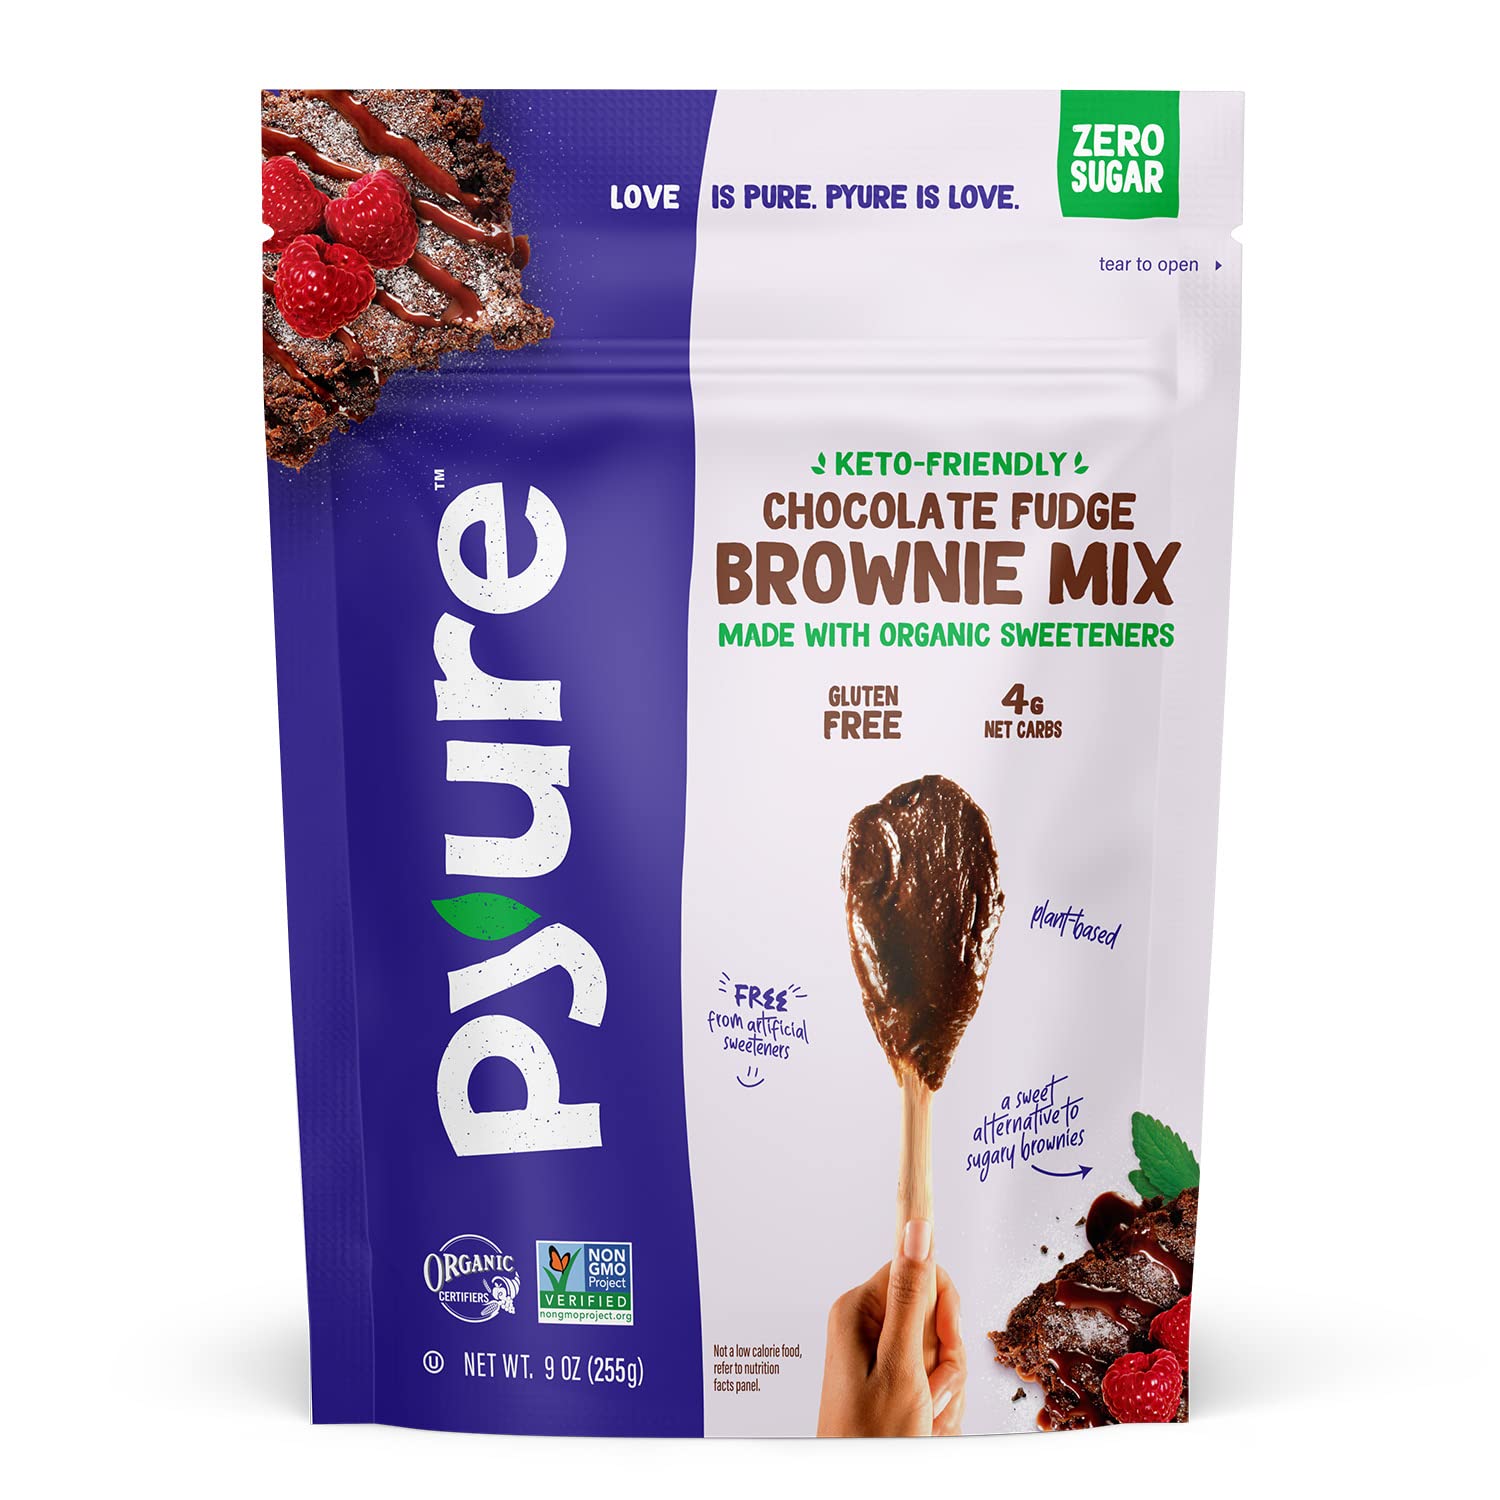 Pyure Chocolate Fudge Brownie Mix | Keto Brownie Mix, Sugar Free Chocolate Low Carb Brownie Mix, Gluten Free Brownies, Vegan Brownies | 4 Net Carbs | Made With Organic Plant-Based Ingredients | 9 oz